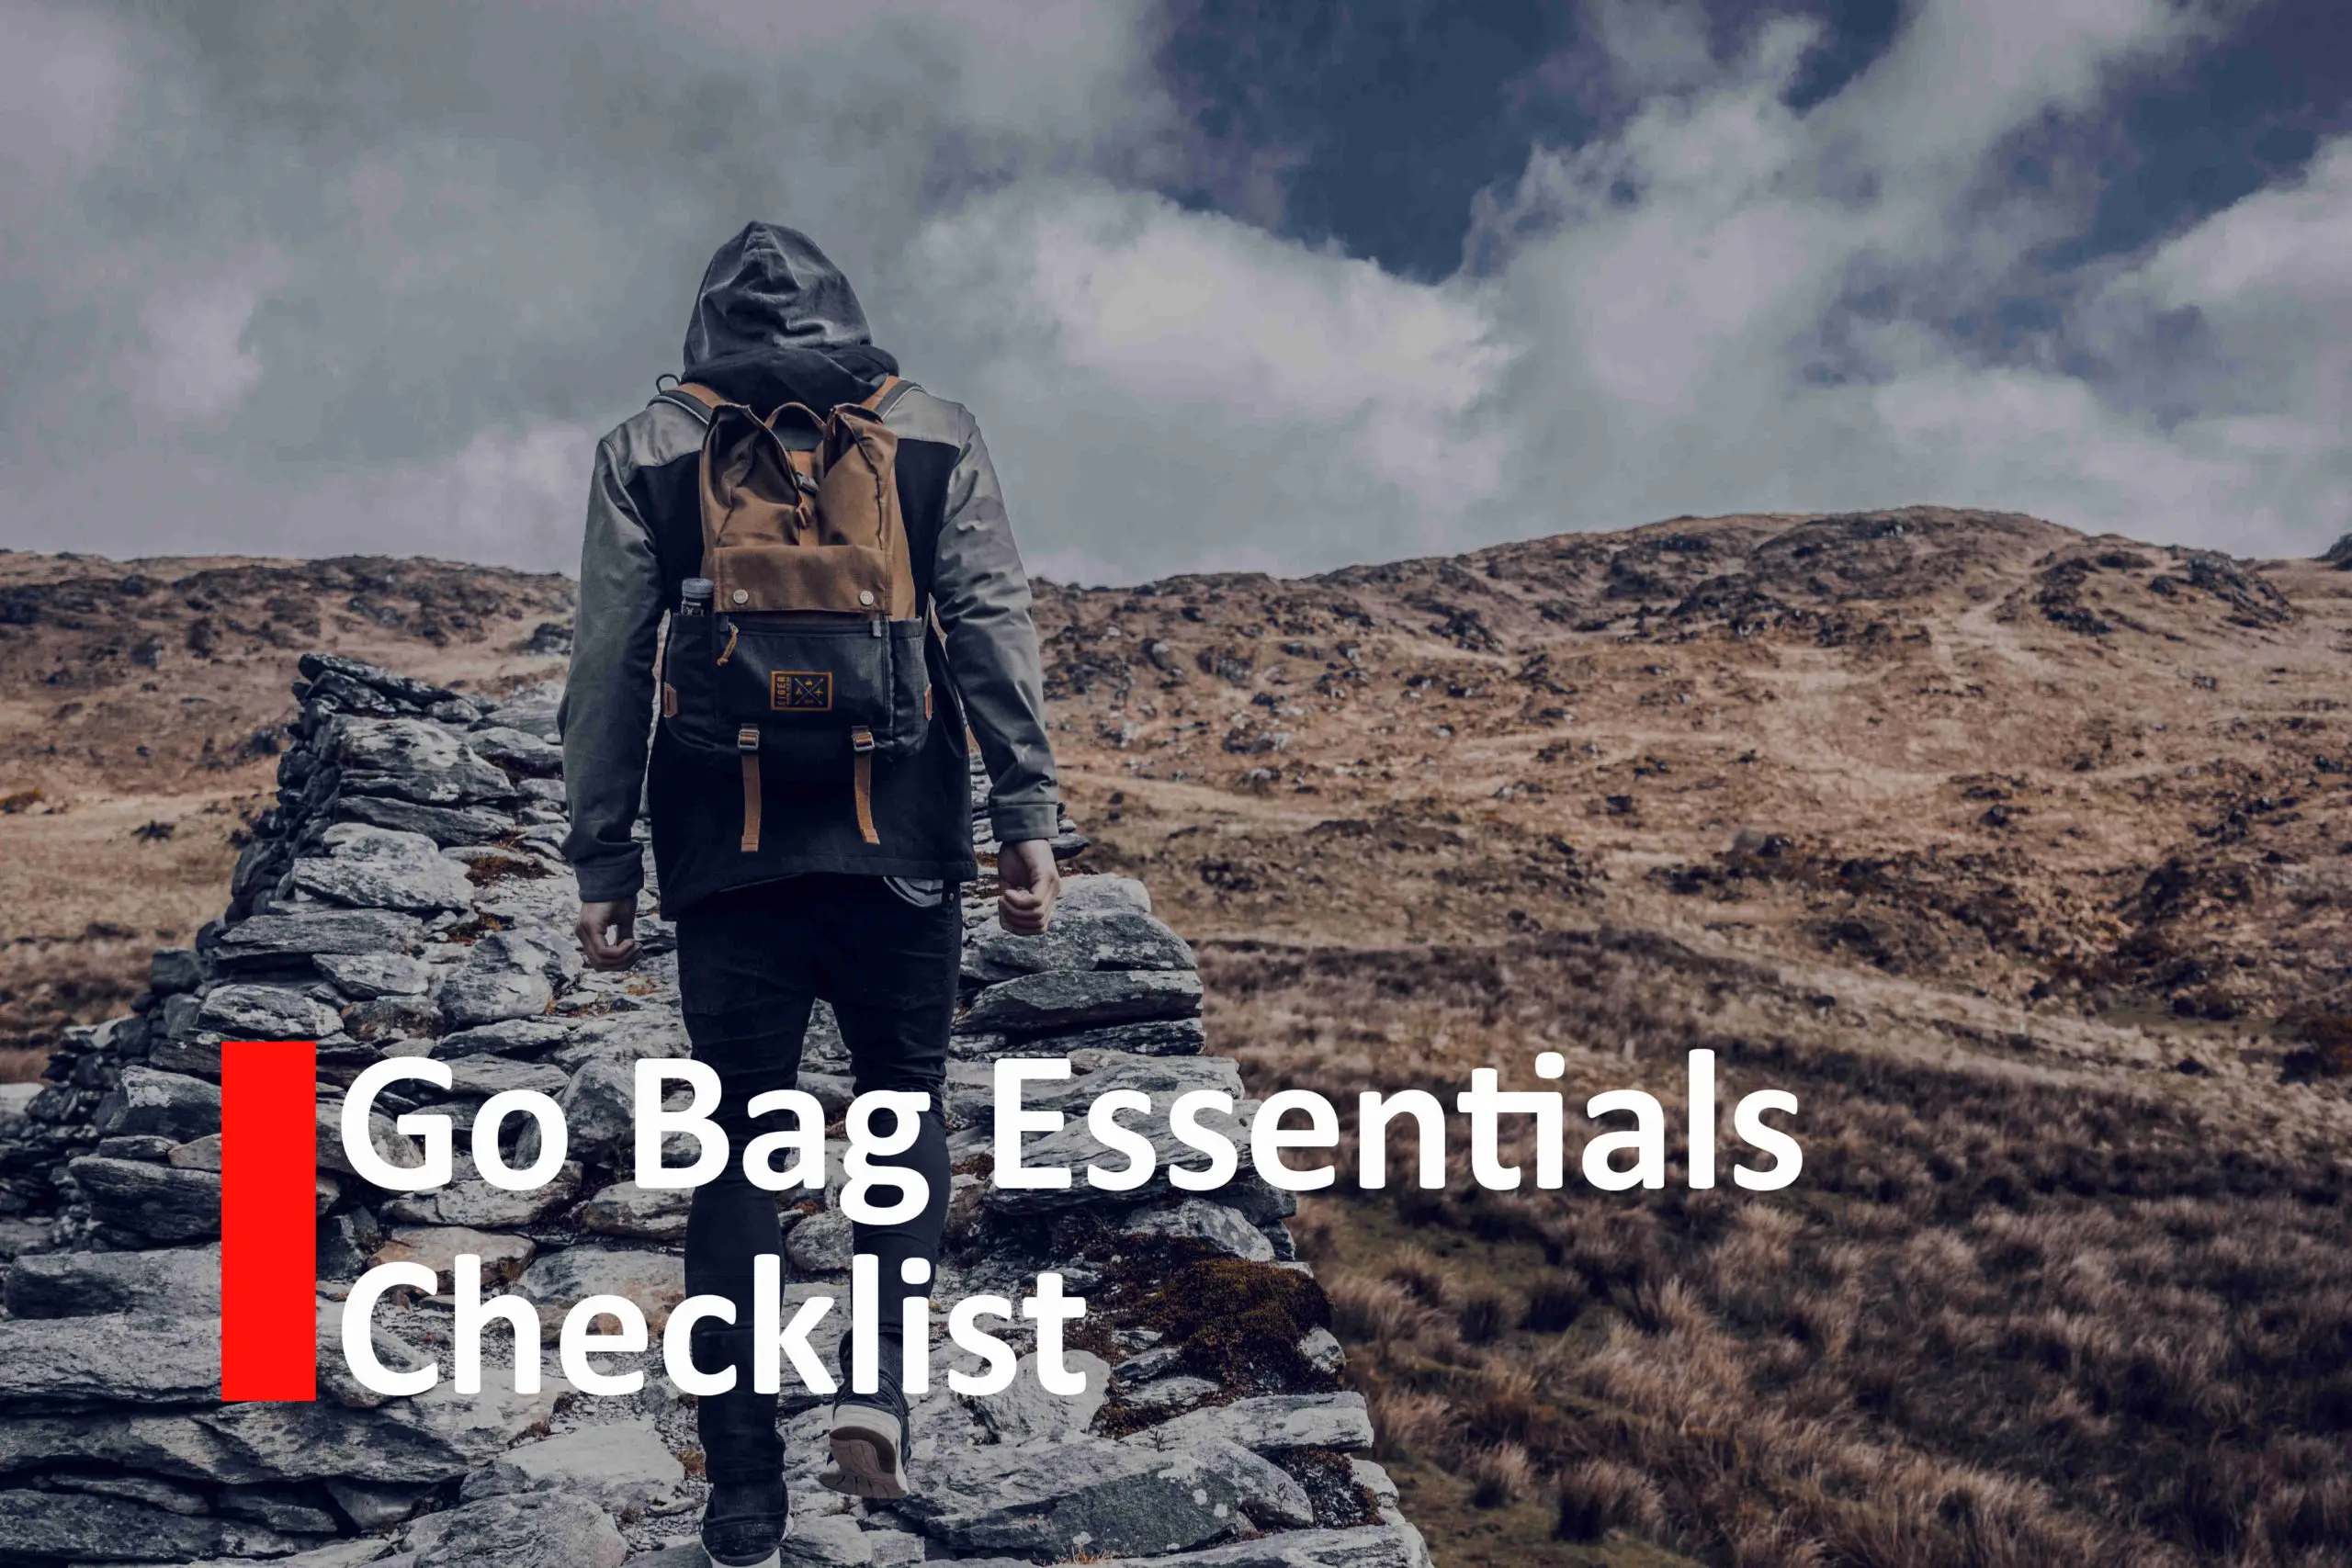 Go bag essentials checklist